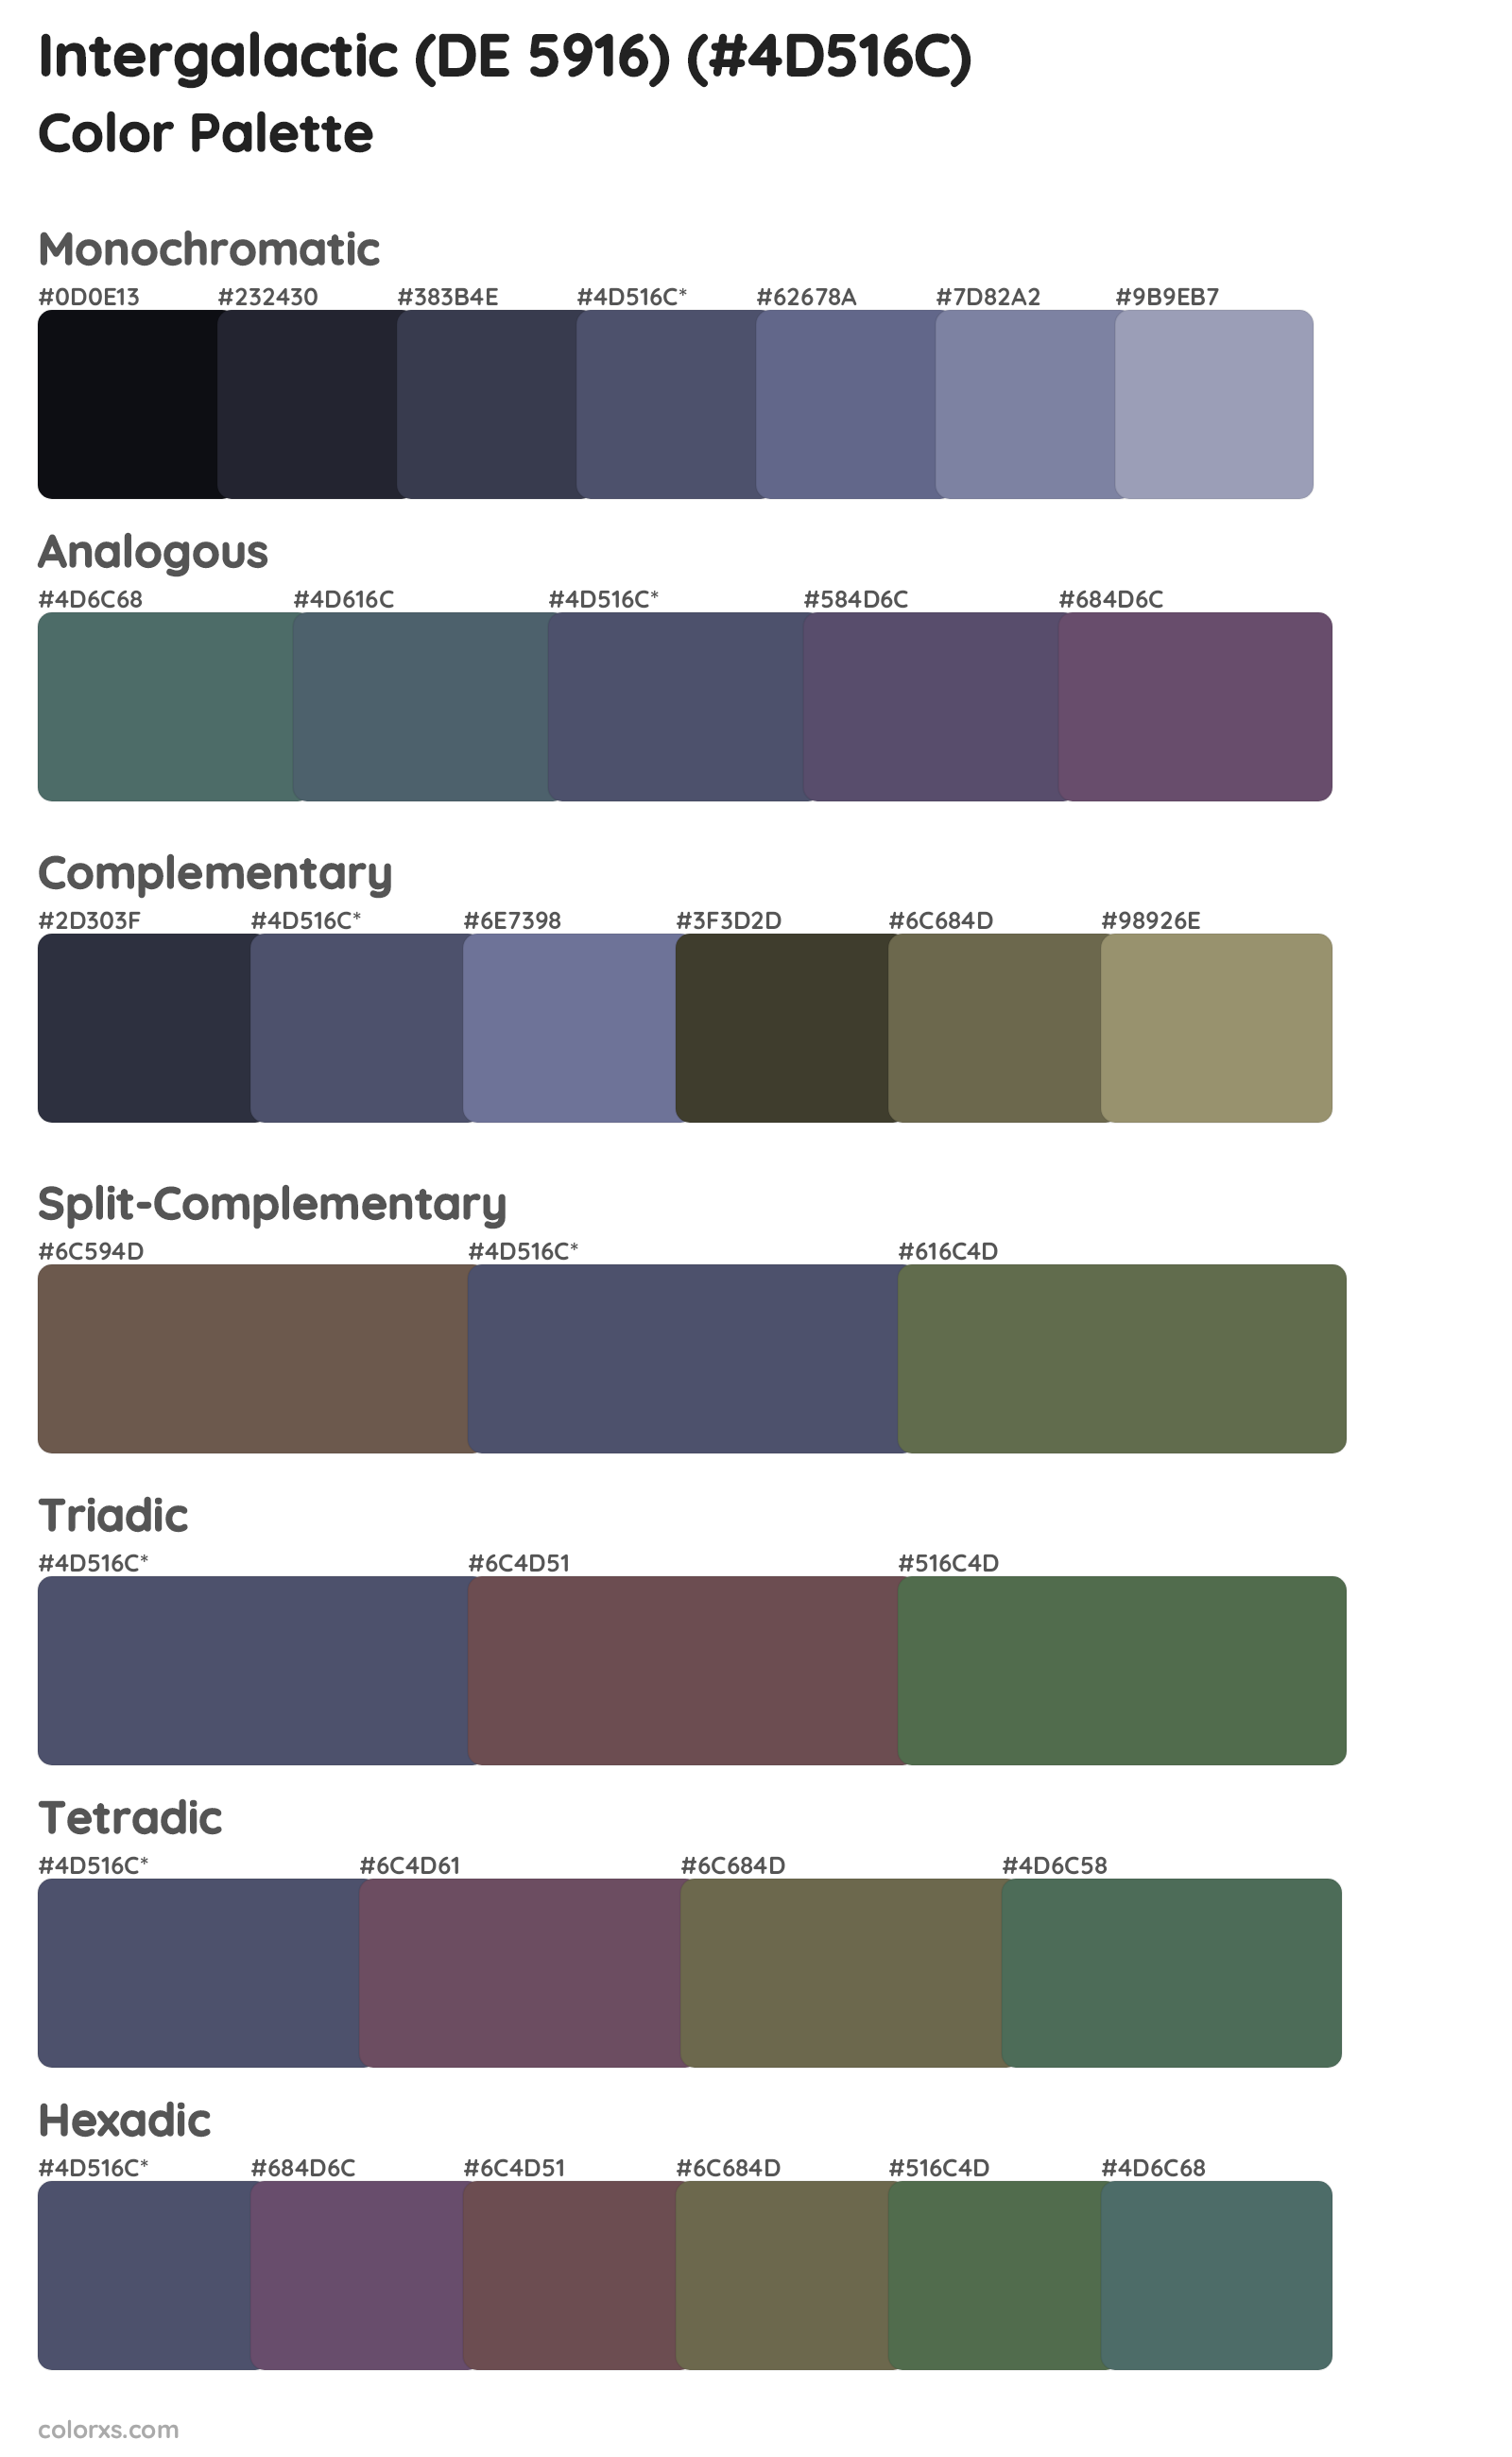 Intergalactic (DE 5916) Color Scheme Palettes